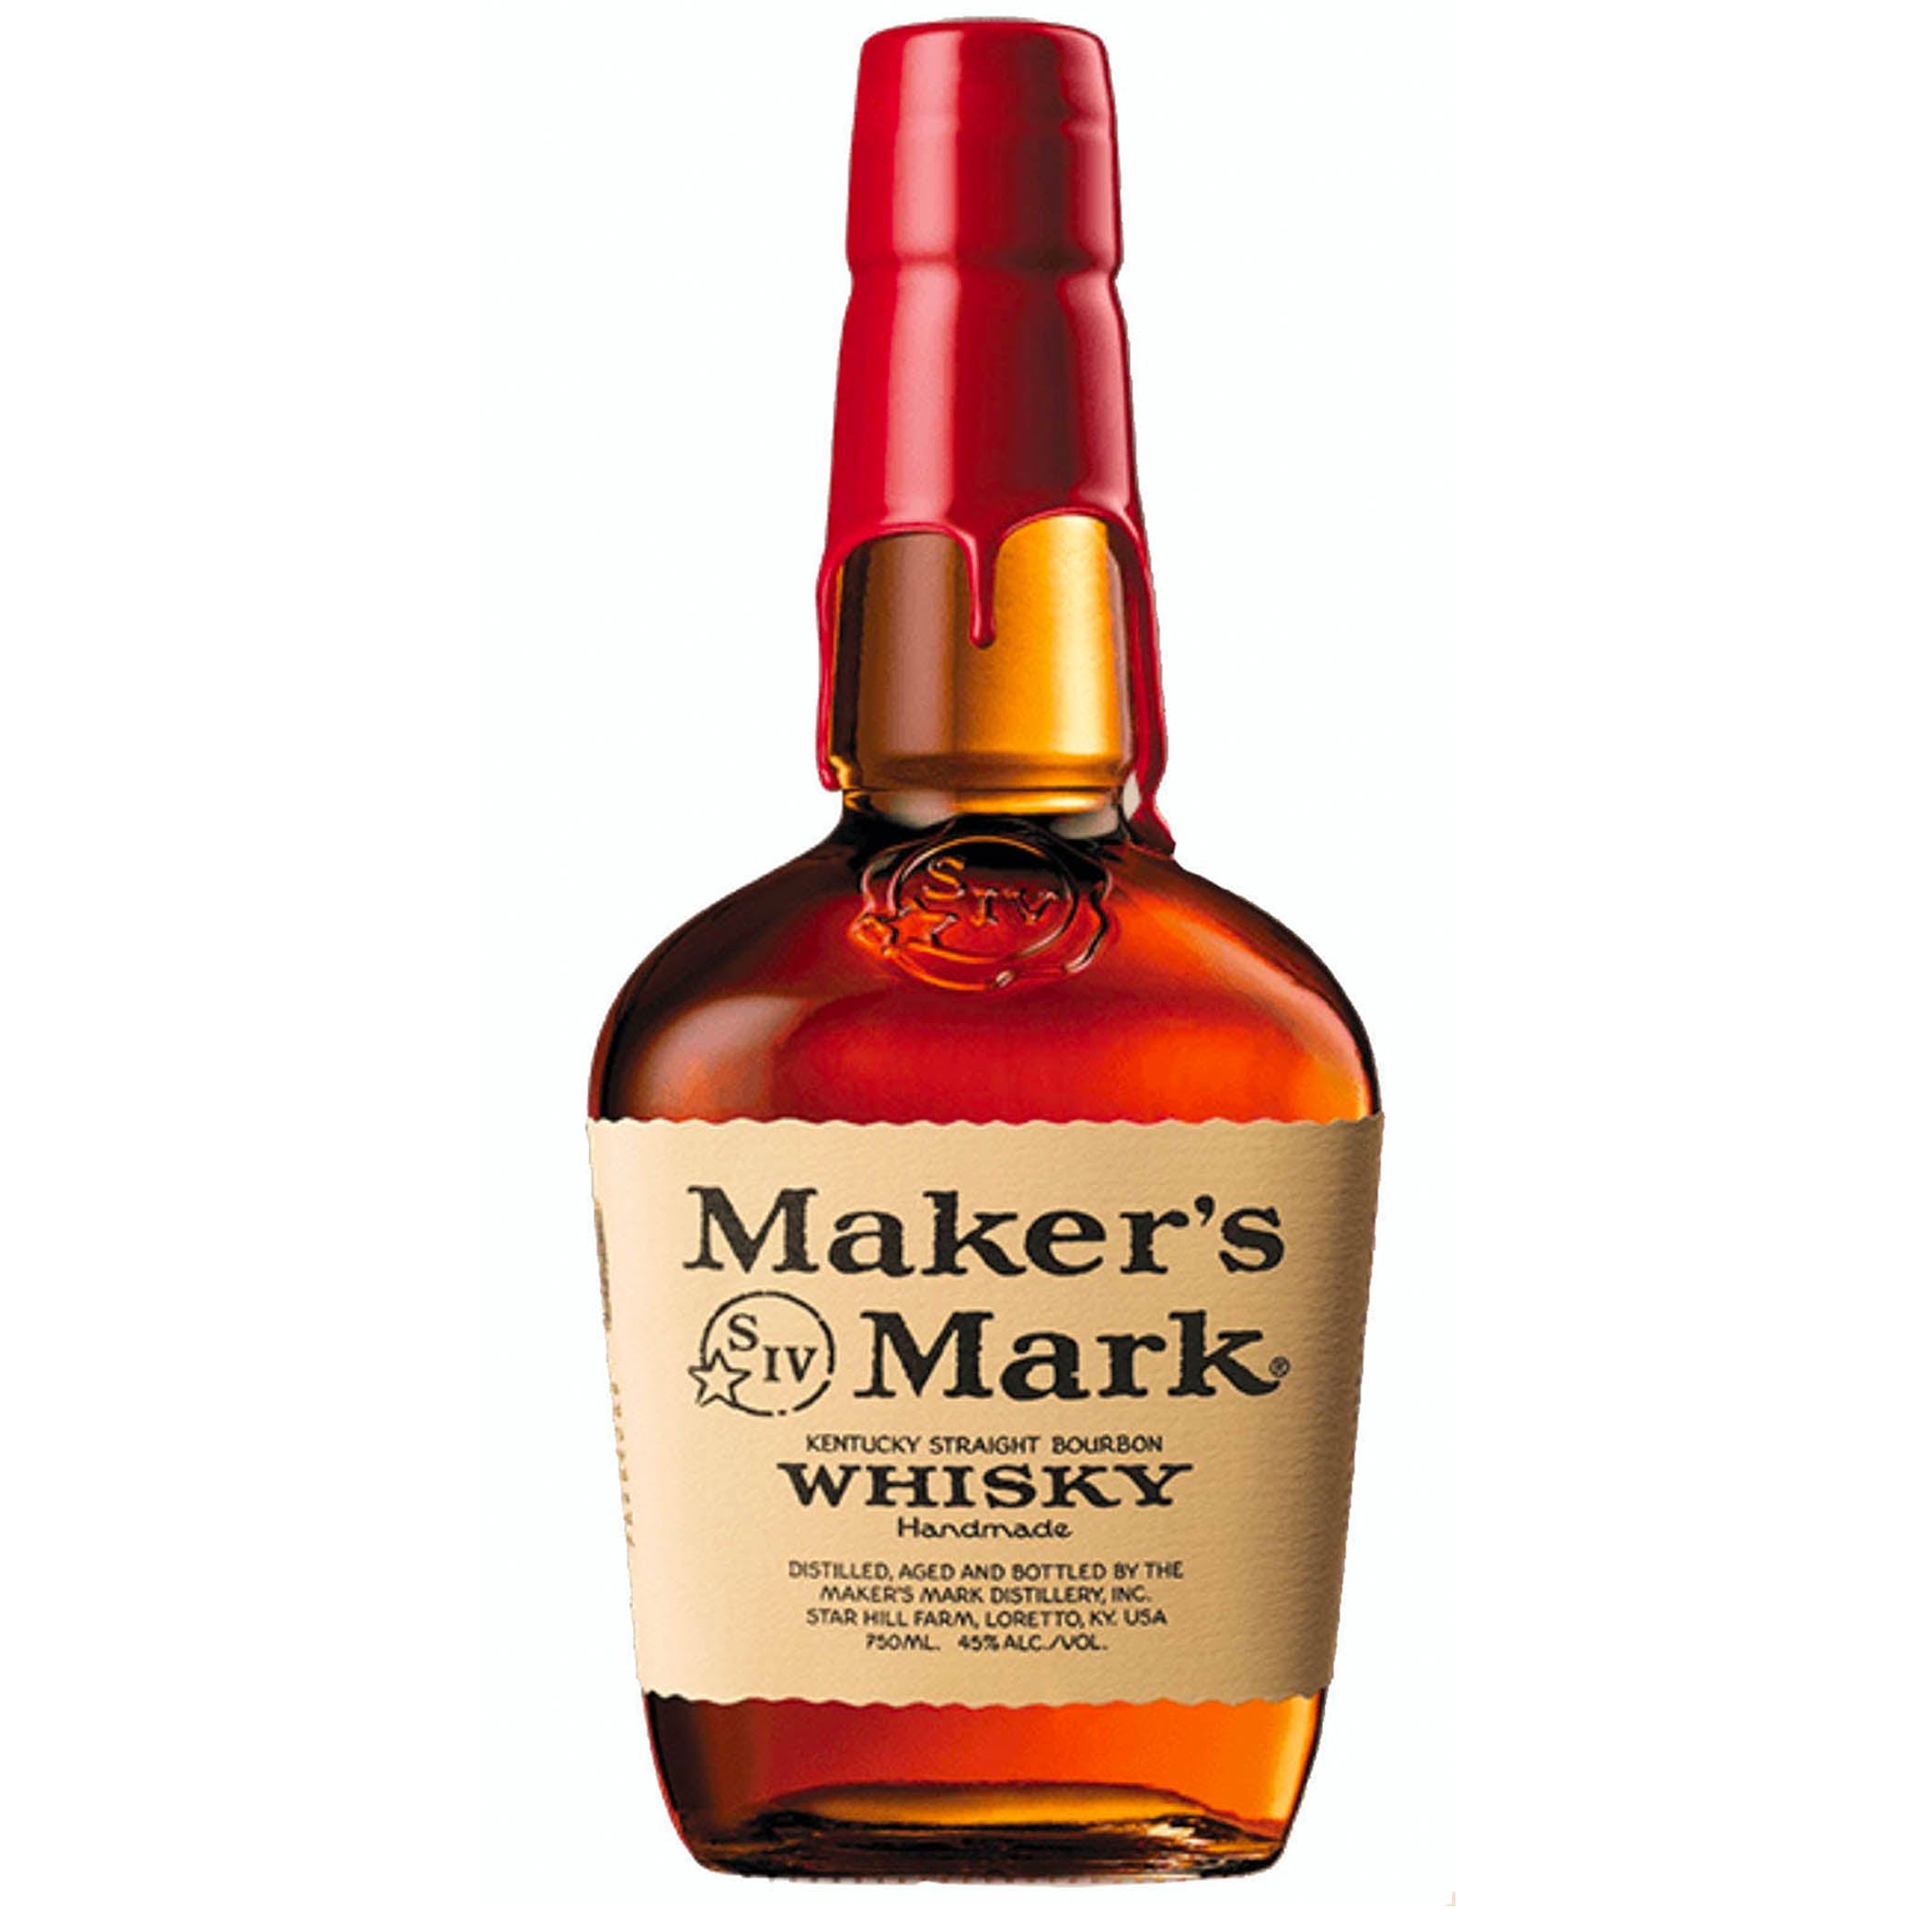 Maker's Mark Bourbon Whisky 1.75L